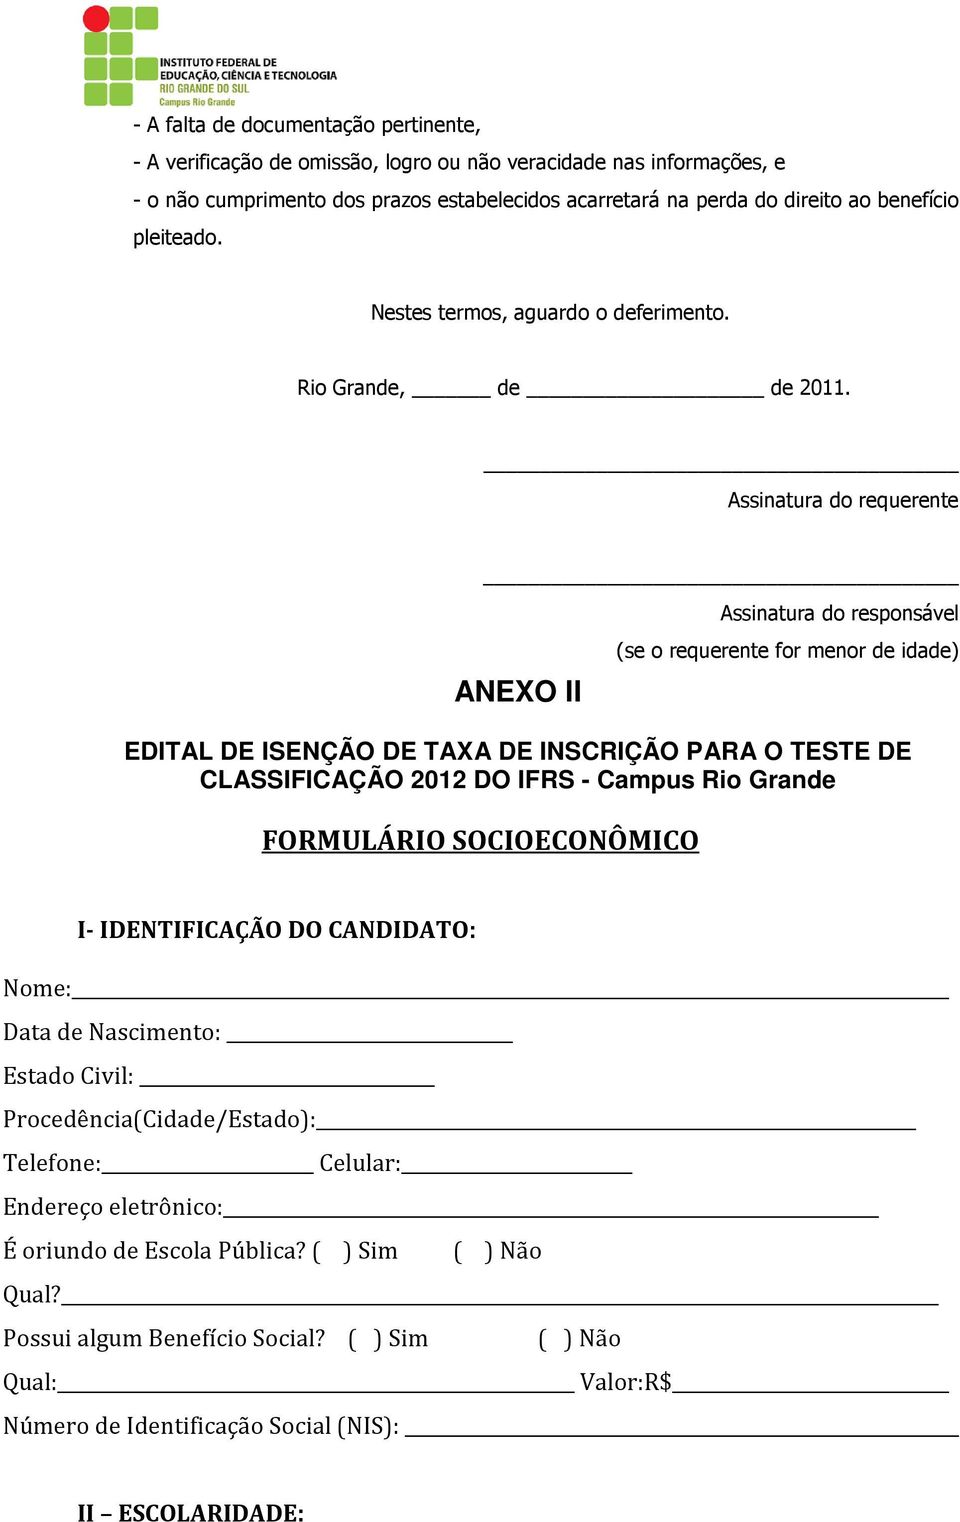 Assinatura do requerente ANEXO II Assinatura do responsável (se o requerente for menor de idade) EDITAL DE ISENÇÃO DE TAXA DE INSCRIÇÃO PARA O TESTE DE CLASSIFICAÇÃO 2012 DO IFRS - Campus Rio Grande